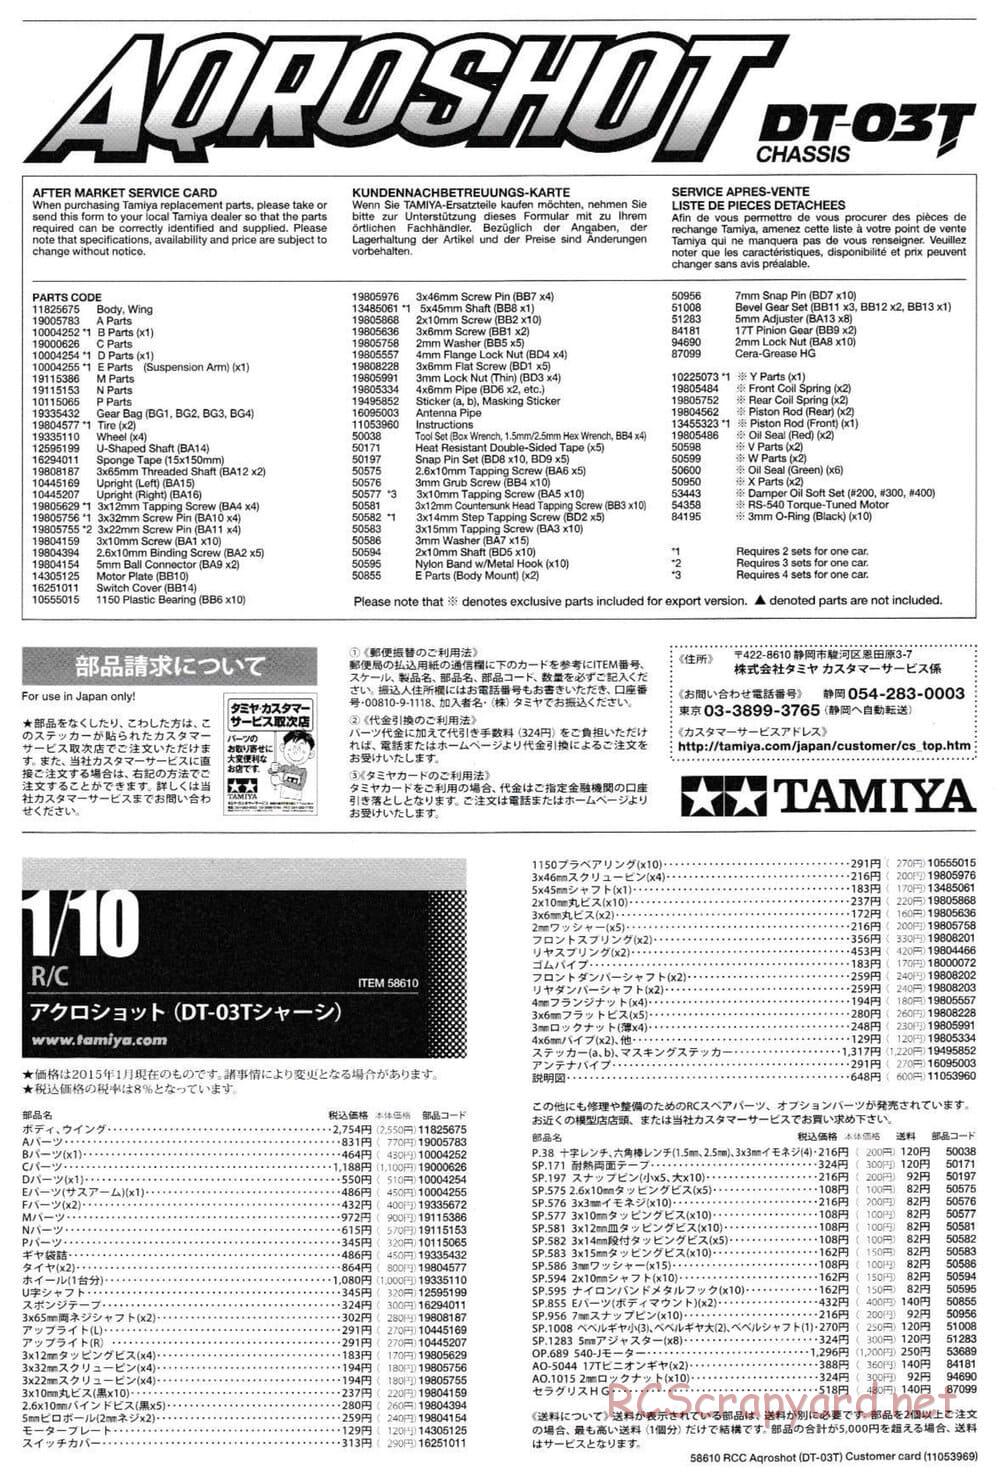 Tamiya - Aqroshot Chassis - Manual - Page 25